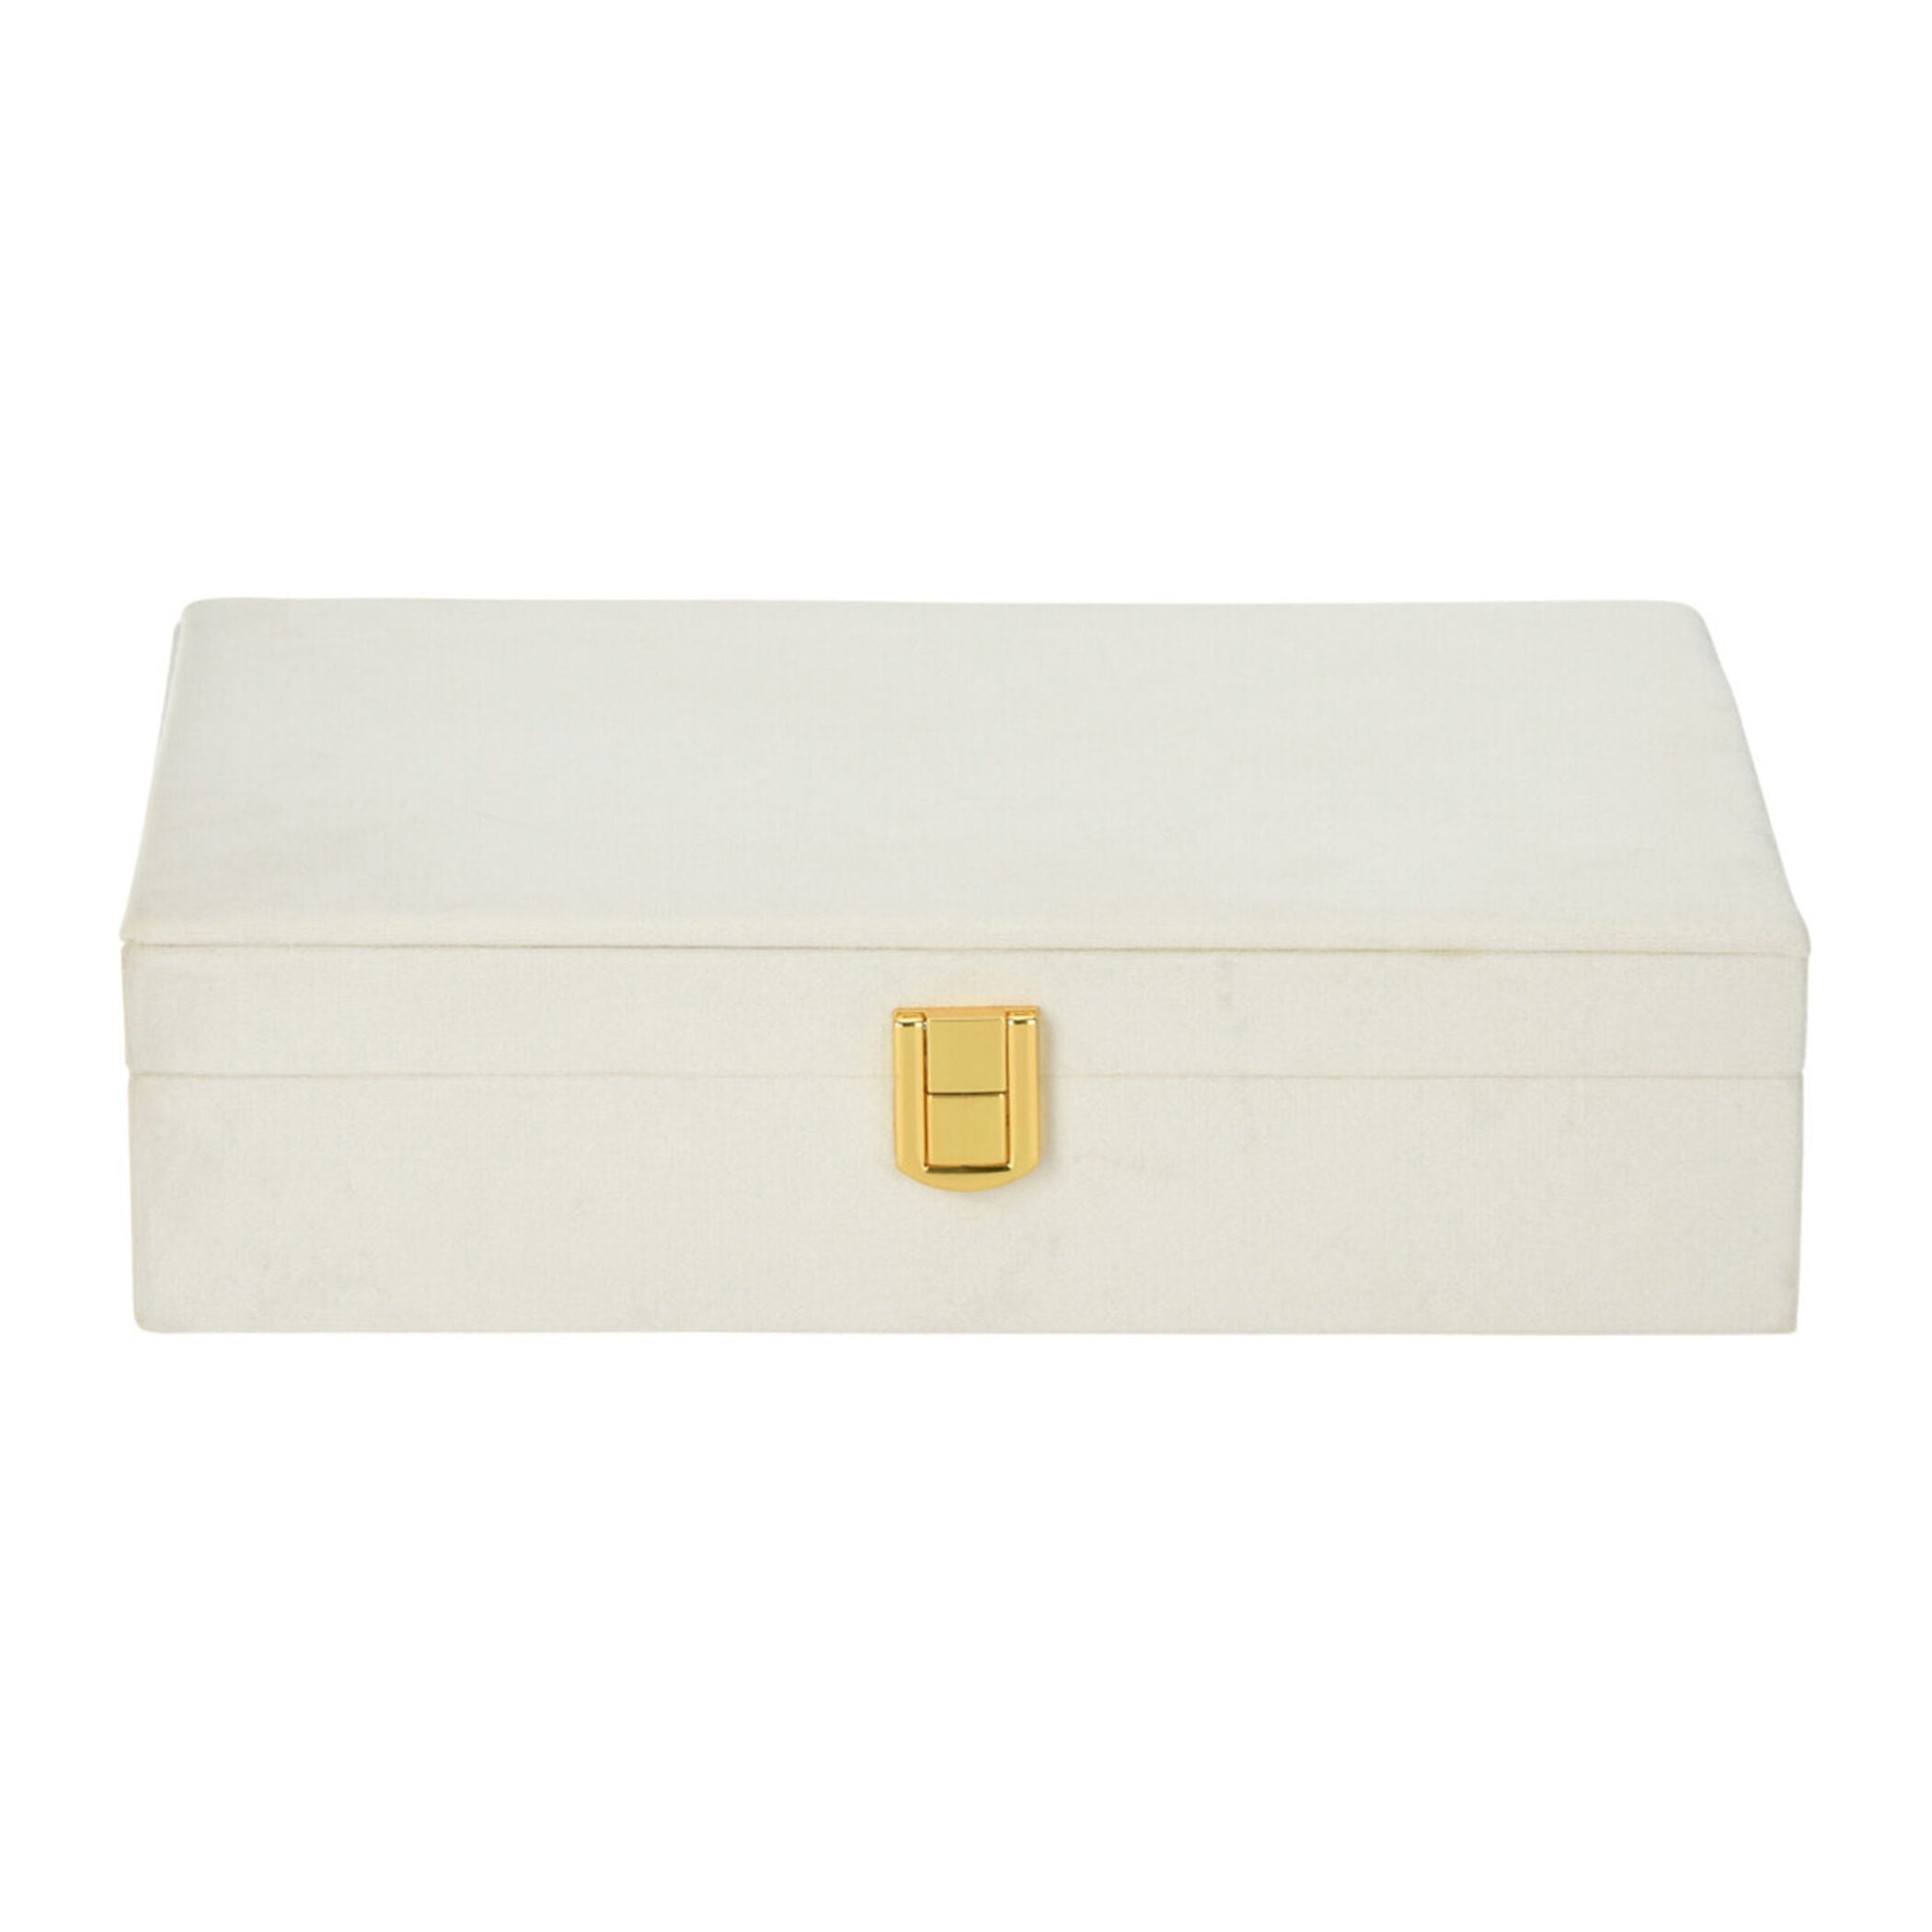 Jewelry box - White